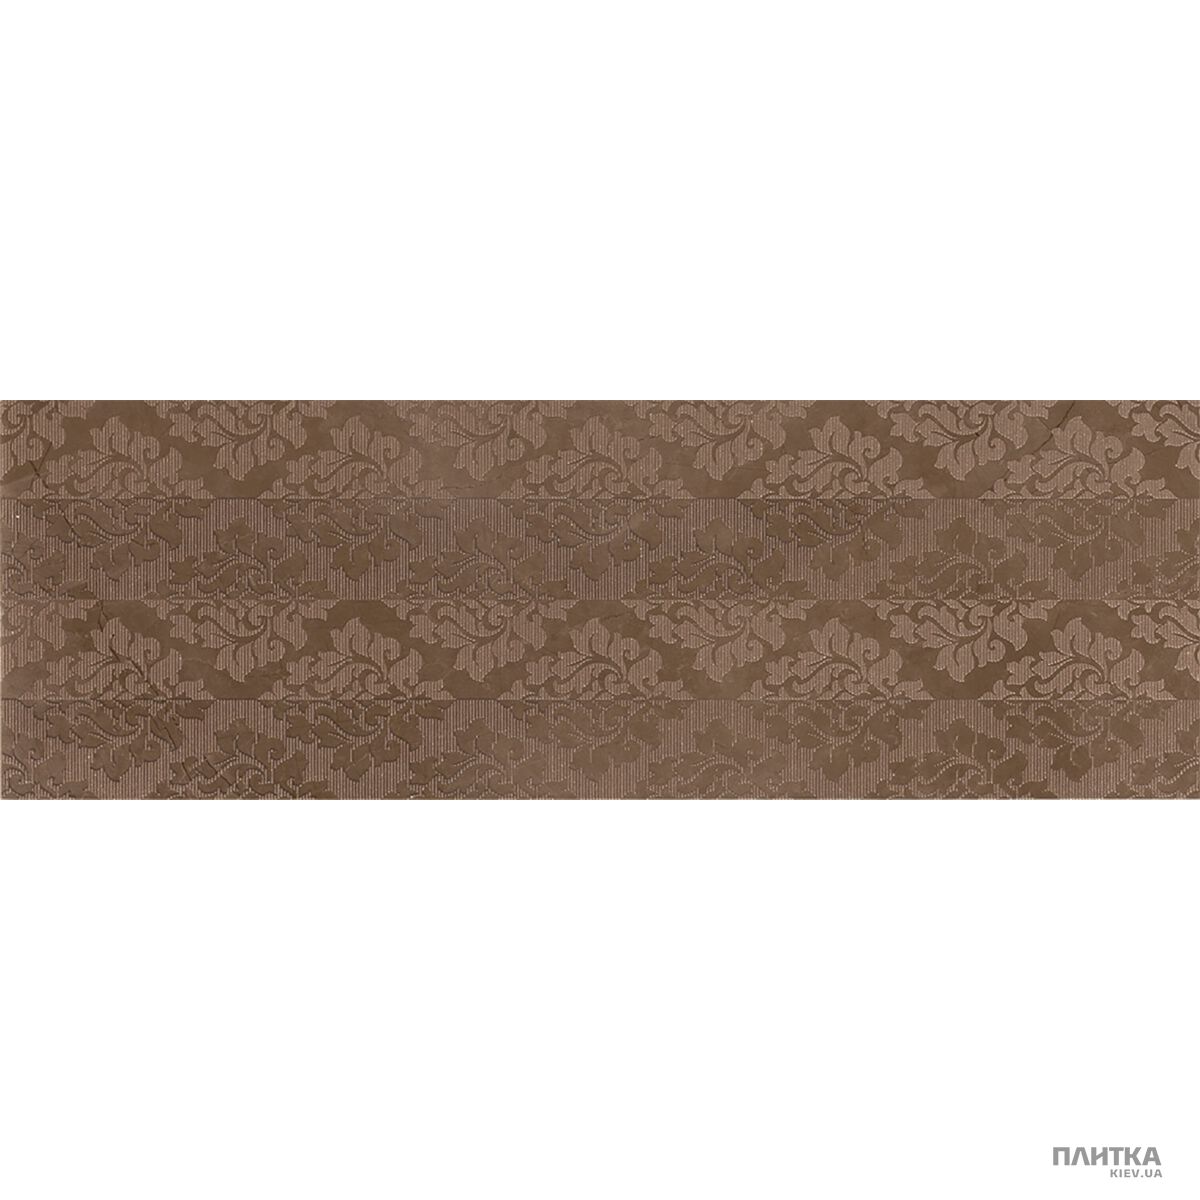 Плитка Marca Corona Deluxe 8961 Dex. Bronze Baroque S/1 коричневый